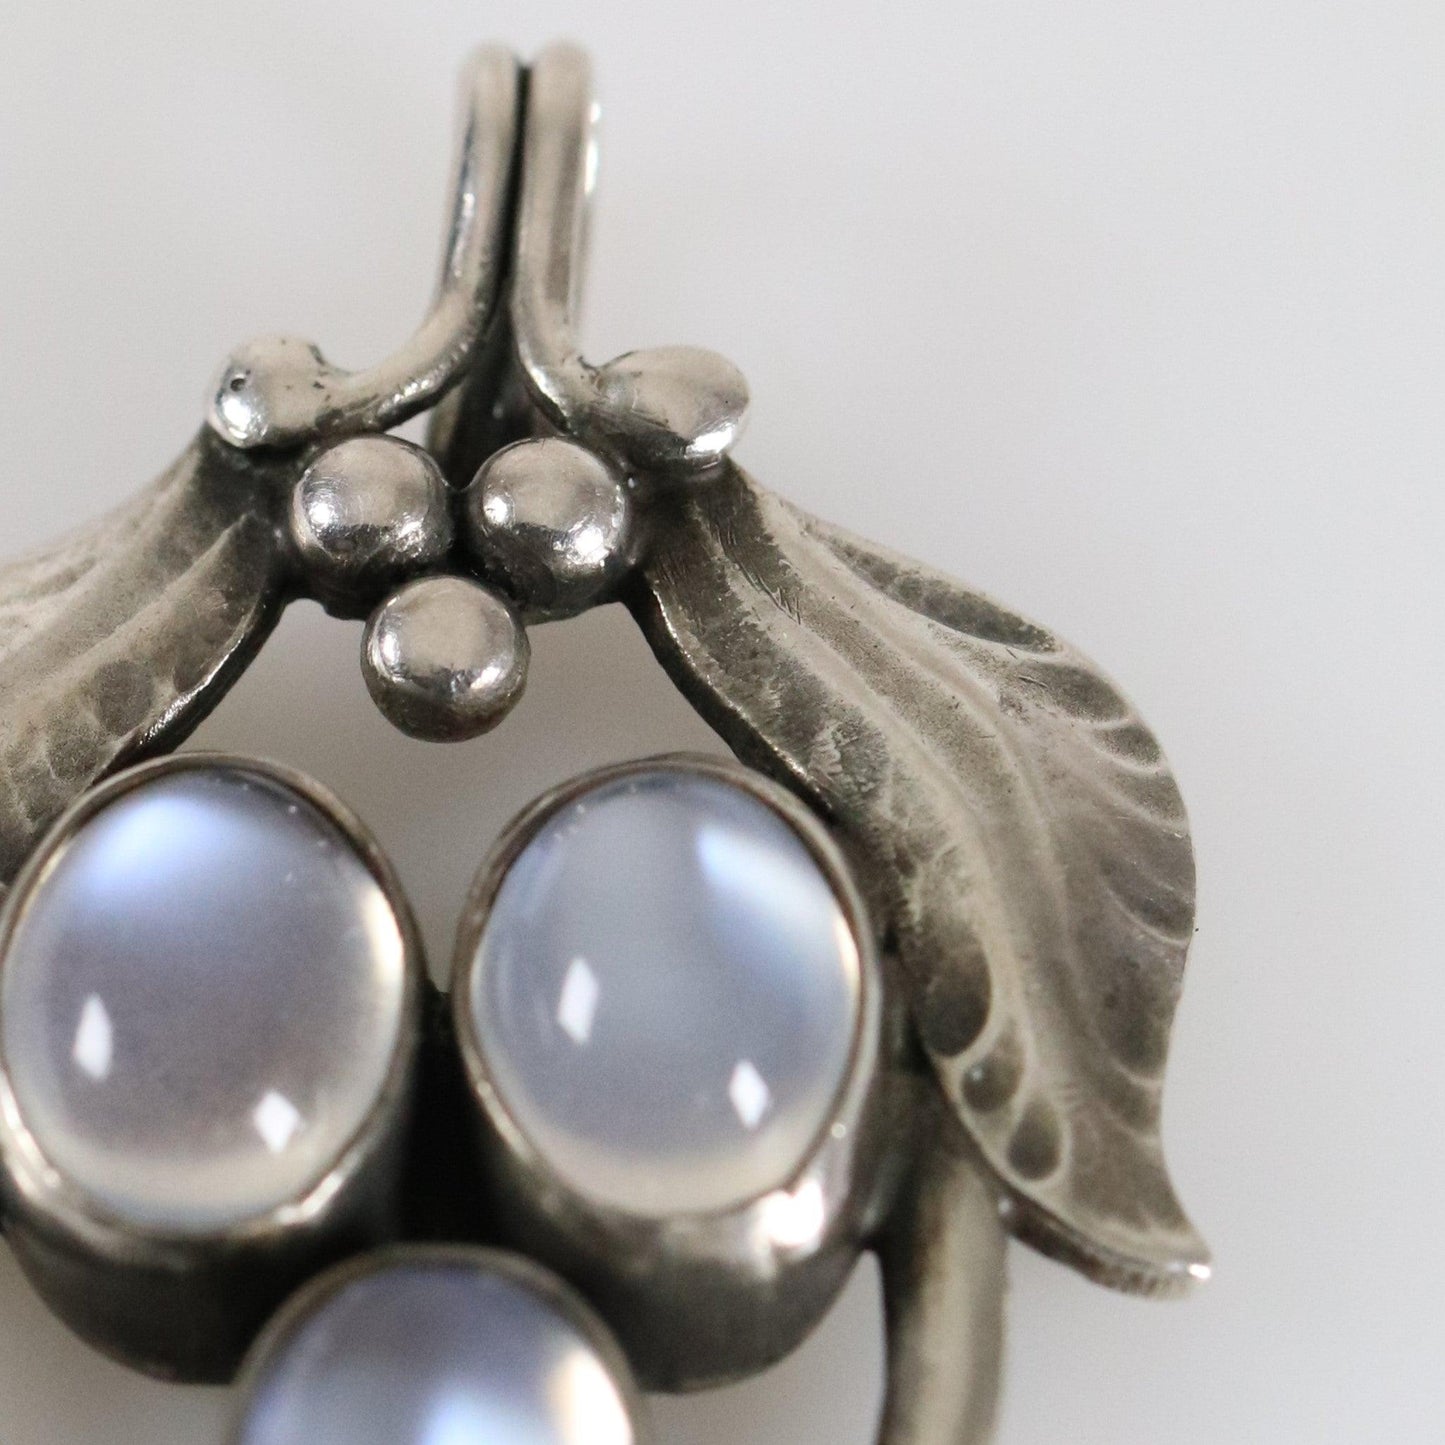 Rare Foliate Moonstone Pendant - Carmel Fine Silver Jewelry